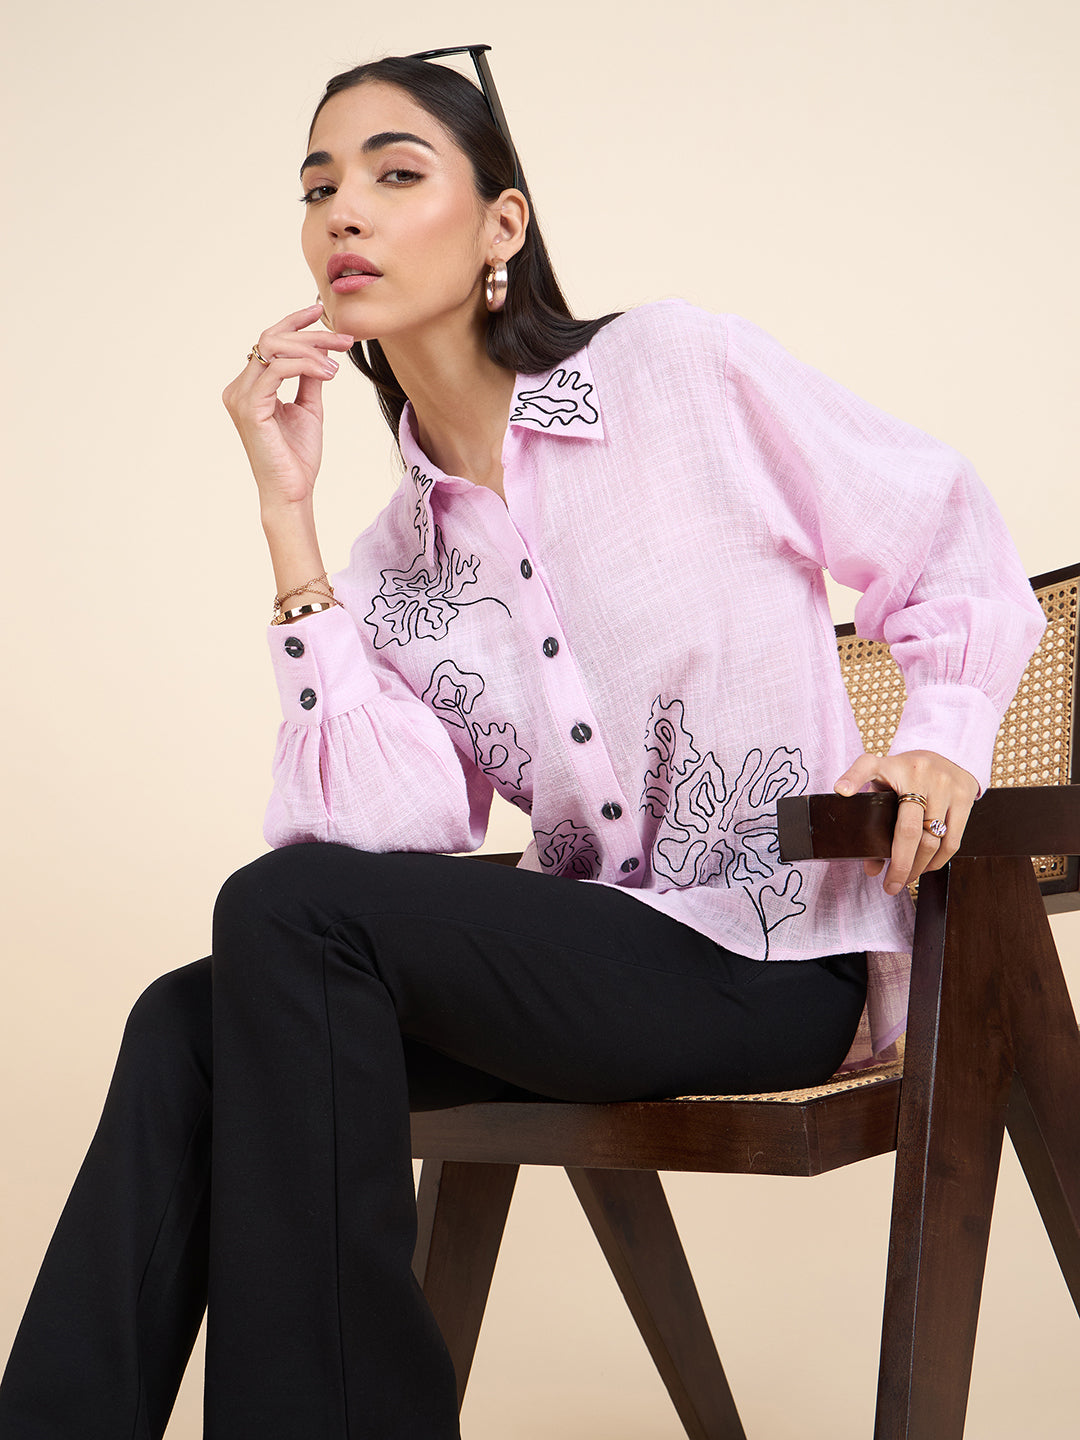 Gipsy Stylish Women Shirts Collection Pastel Pink